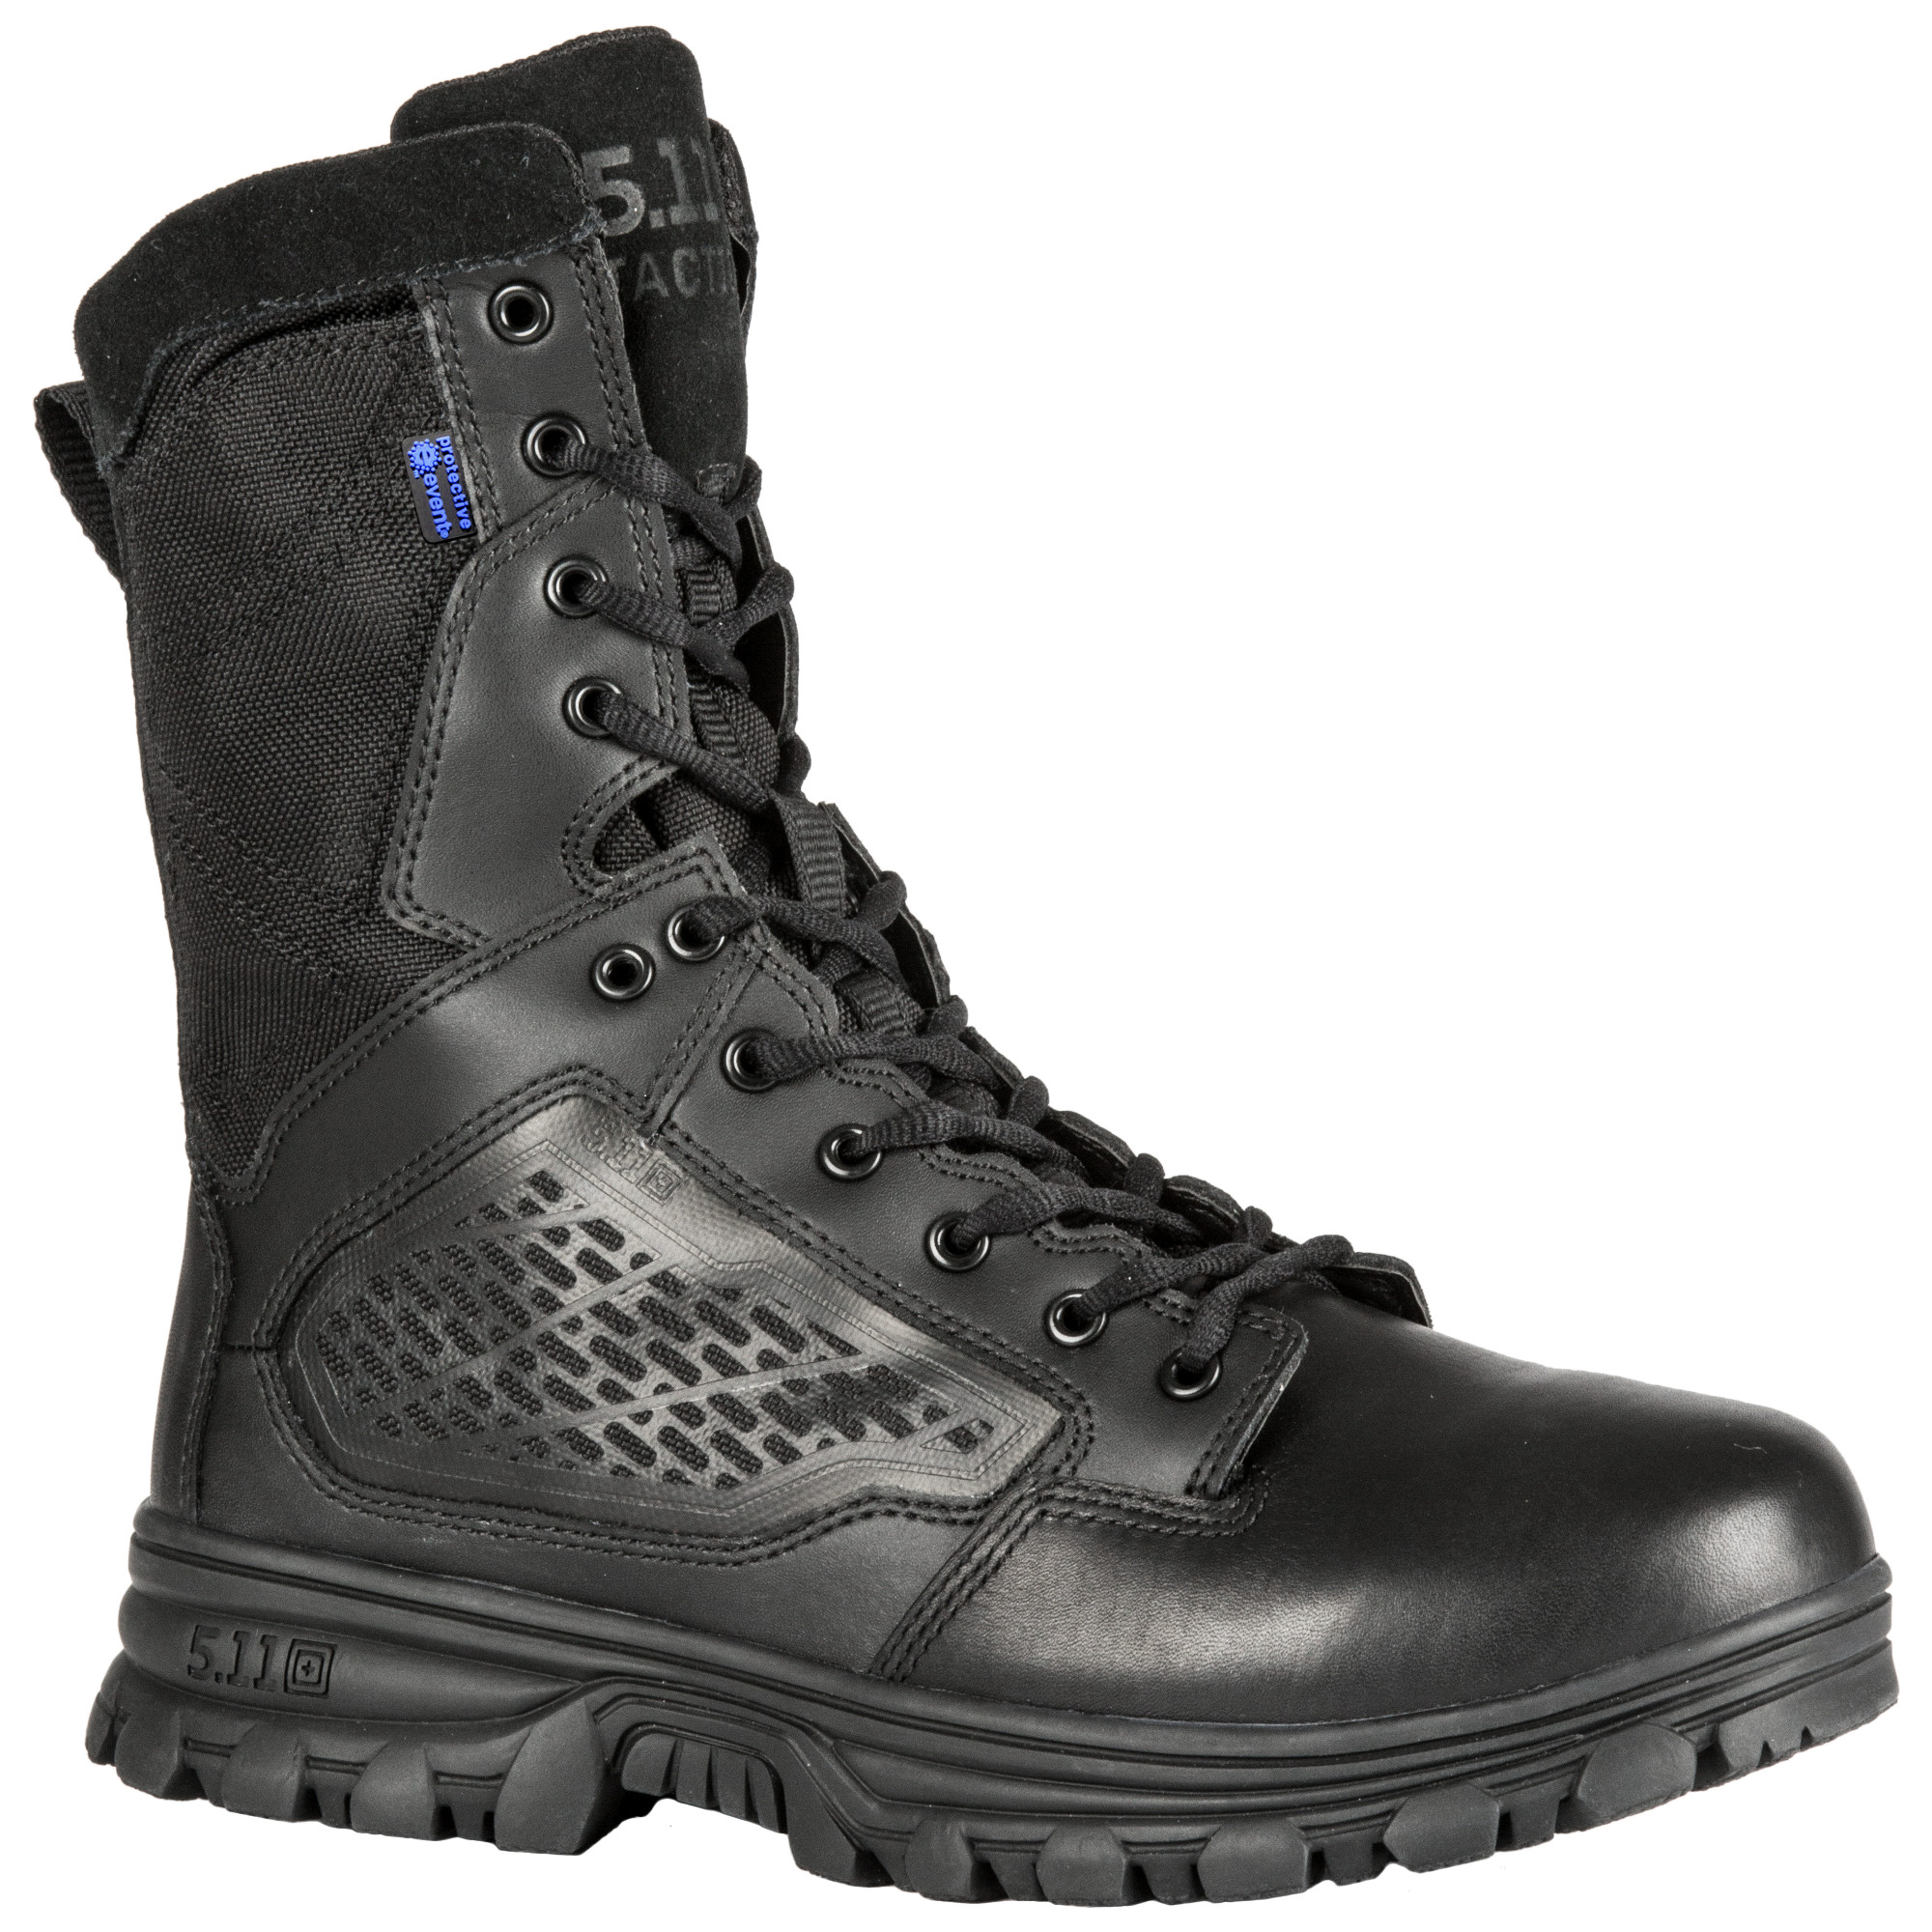 magnum 5.11 boots